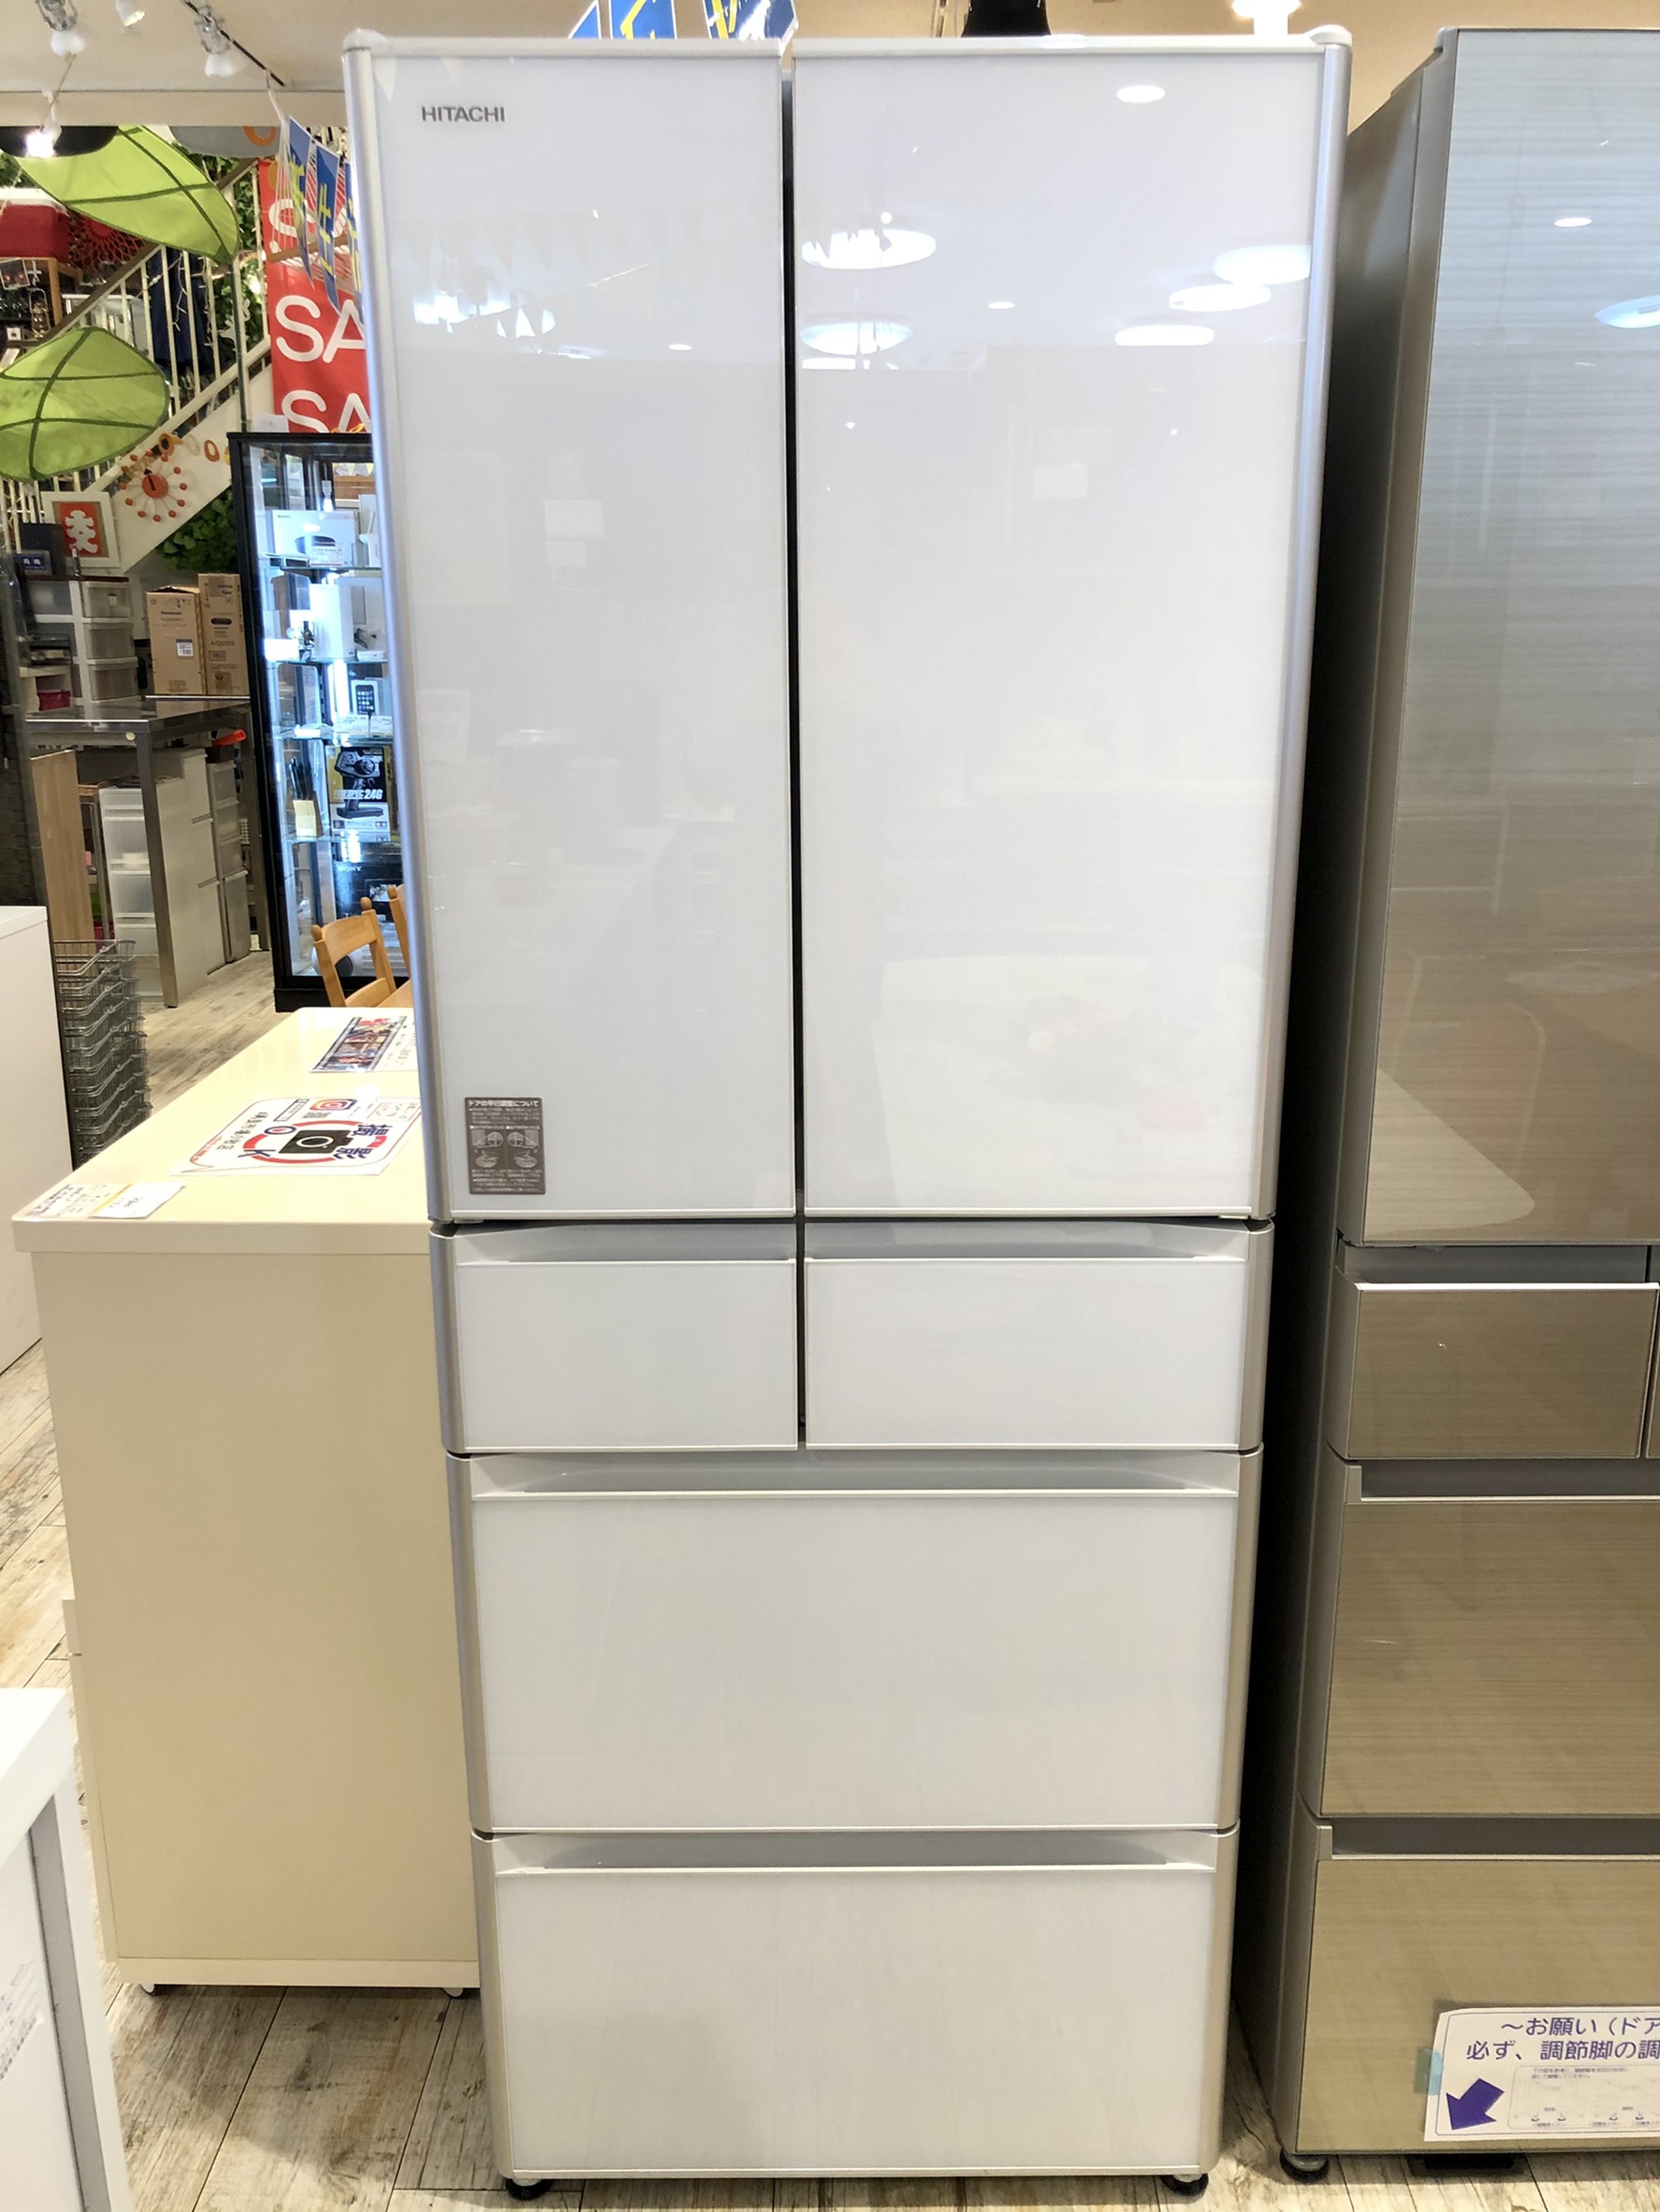 日立ノンフロン冷凍冷蔵庫、R-XG51J(XW)型、505L - キッチン家電